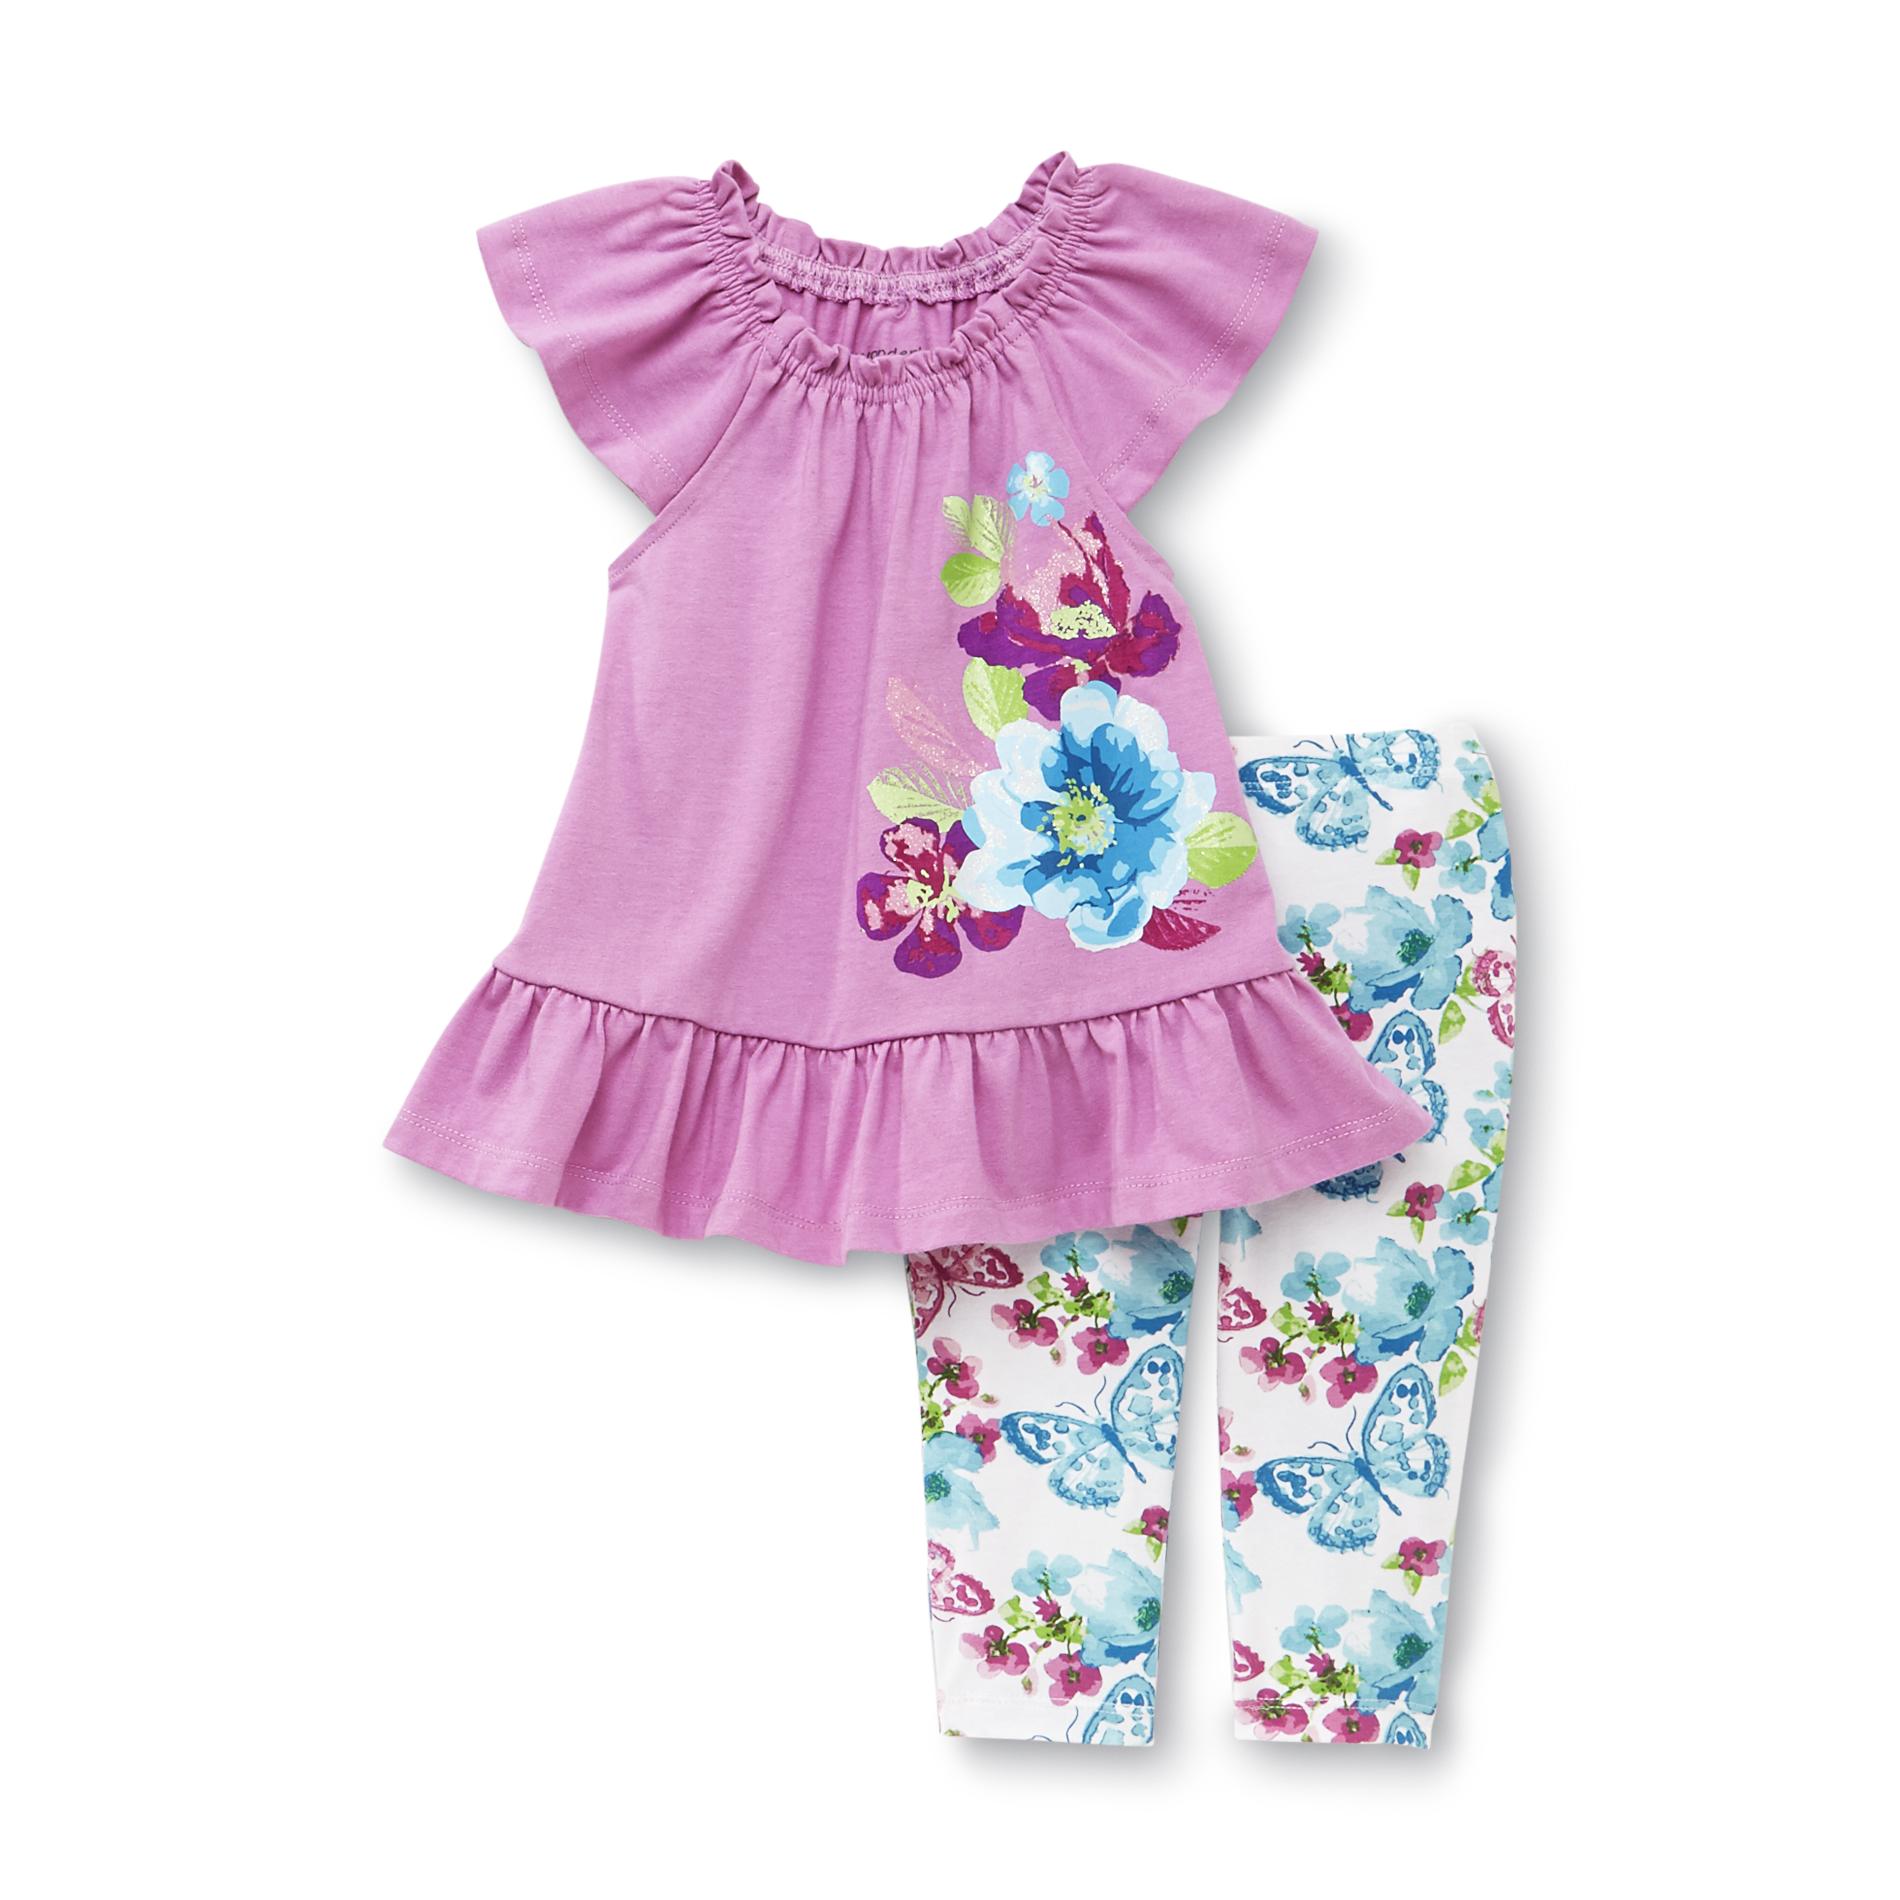 WonderKids Infant & Toddler Girl's Tunic & Leggings - Floral Butterflies